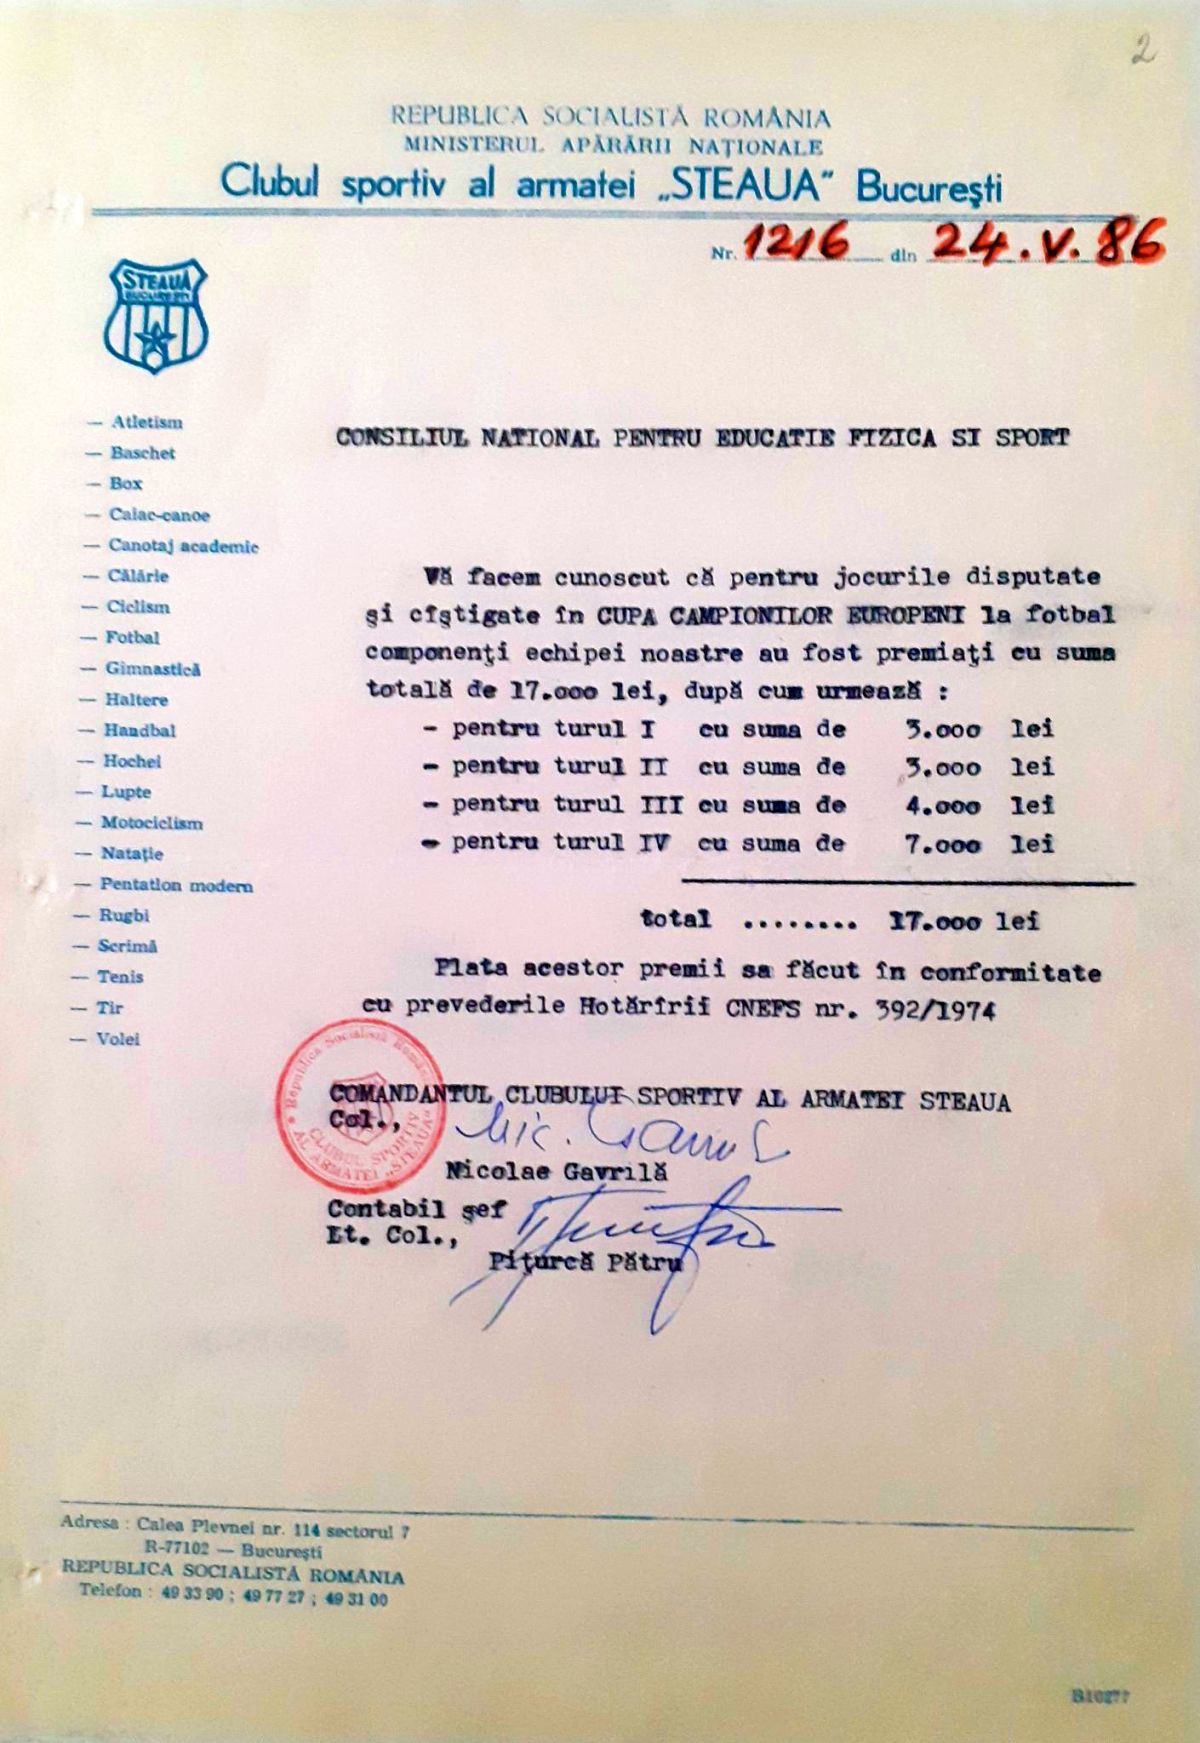 Documente dezarhivate, la 36 de ani de la Sevilla » Ce premii ar fi trebuit să primească inițial „viteziștii”, în loc de ARO + Ceaușescu: „Un loc 1 nu e suficient”